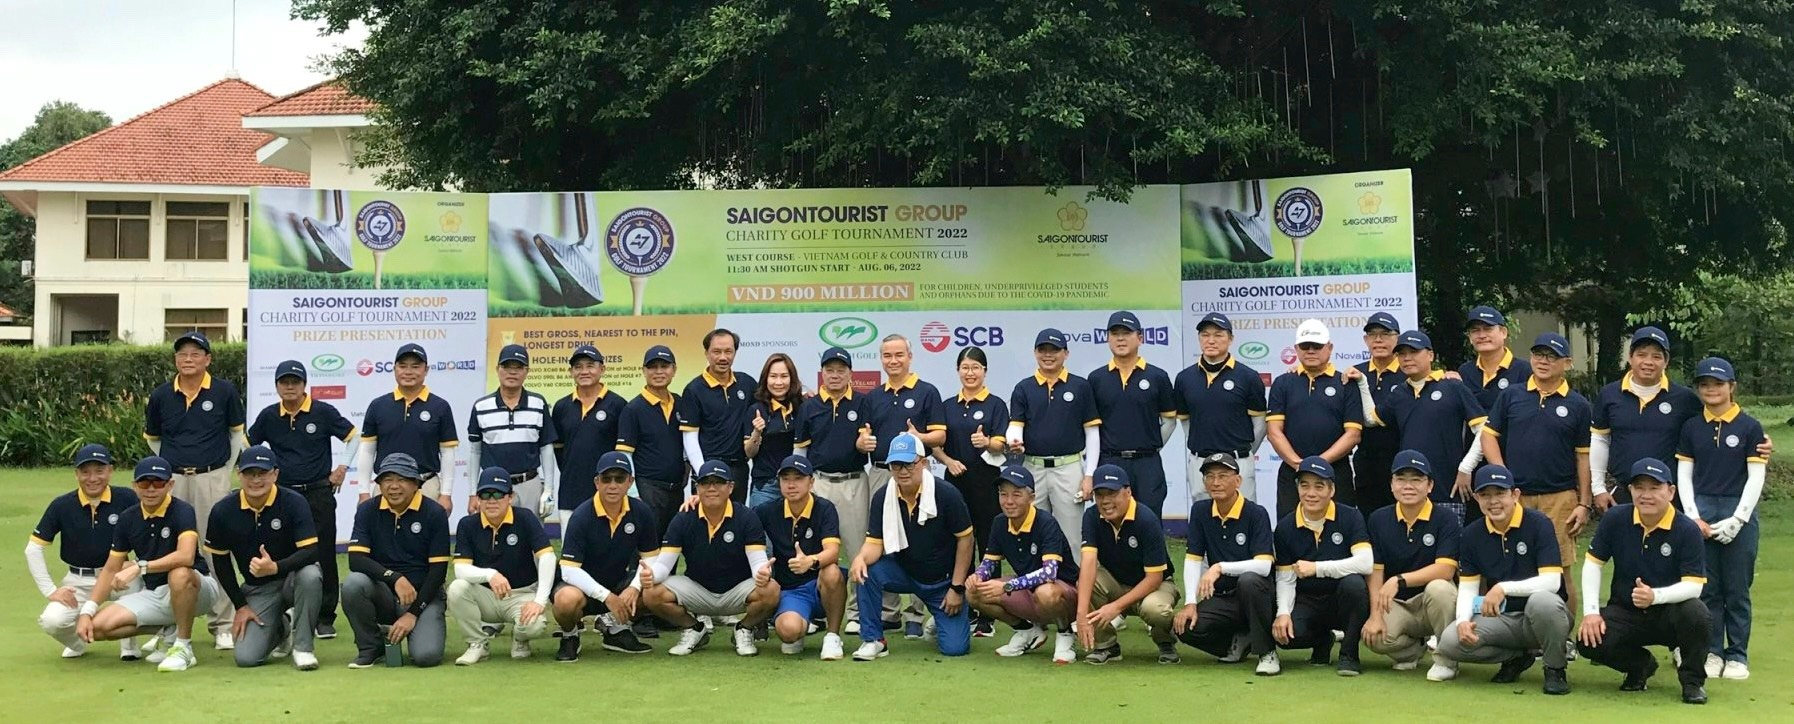 1-ti-dong-tu-thien-tu-giai-golf-saigontourist-group